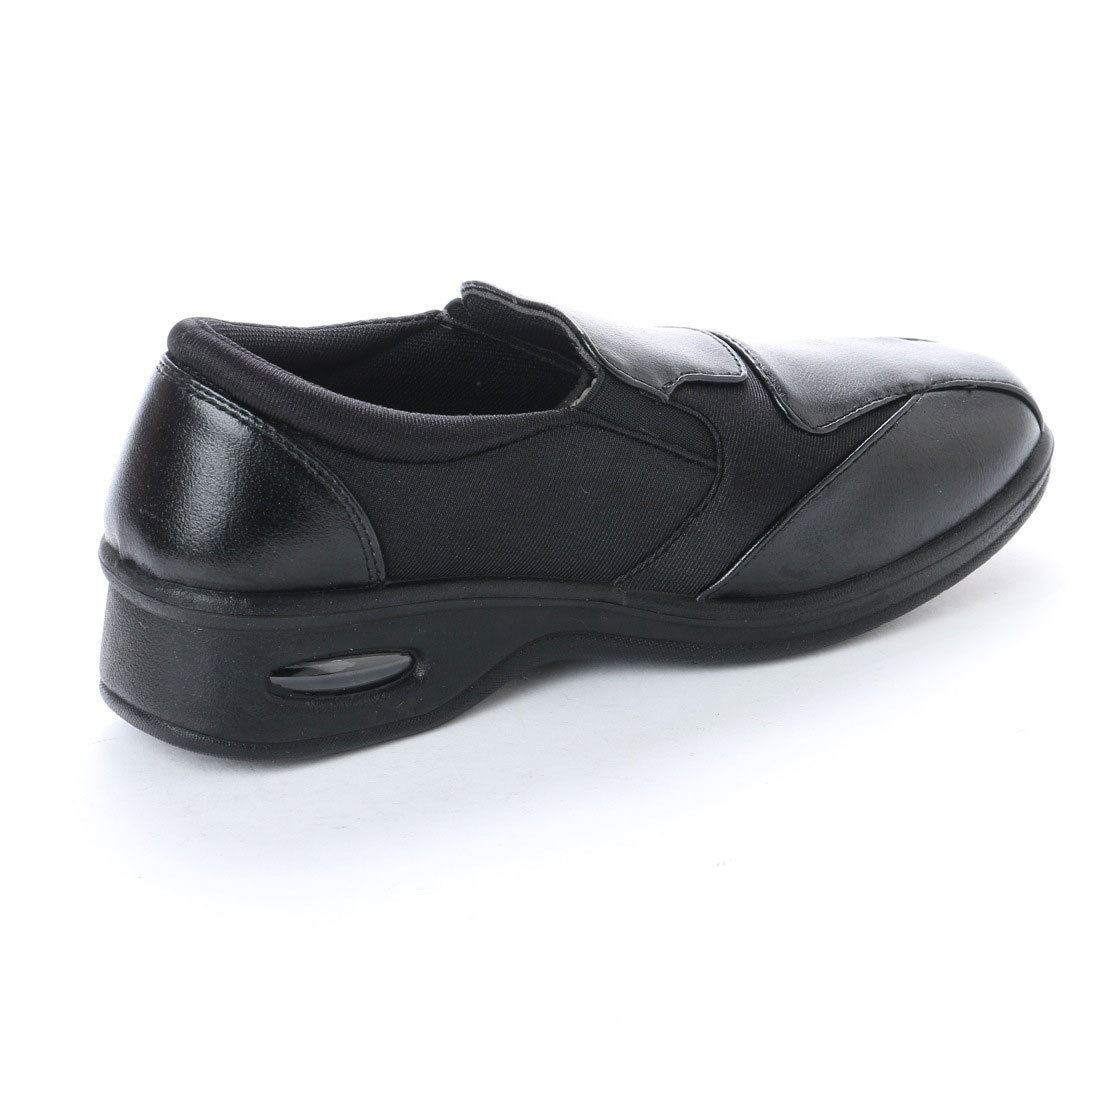 [ новый товар не использовался ] прогулочные туфли черный 24.0cm чёрный 17443